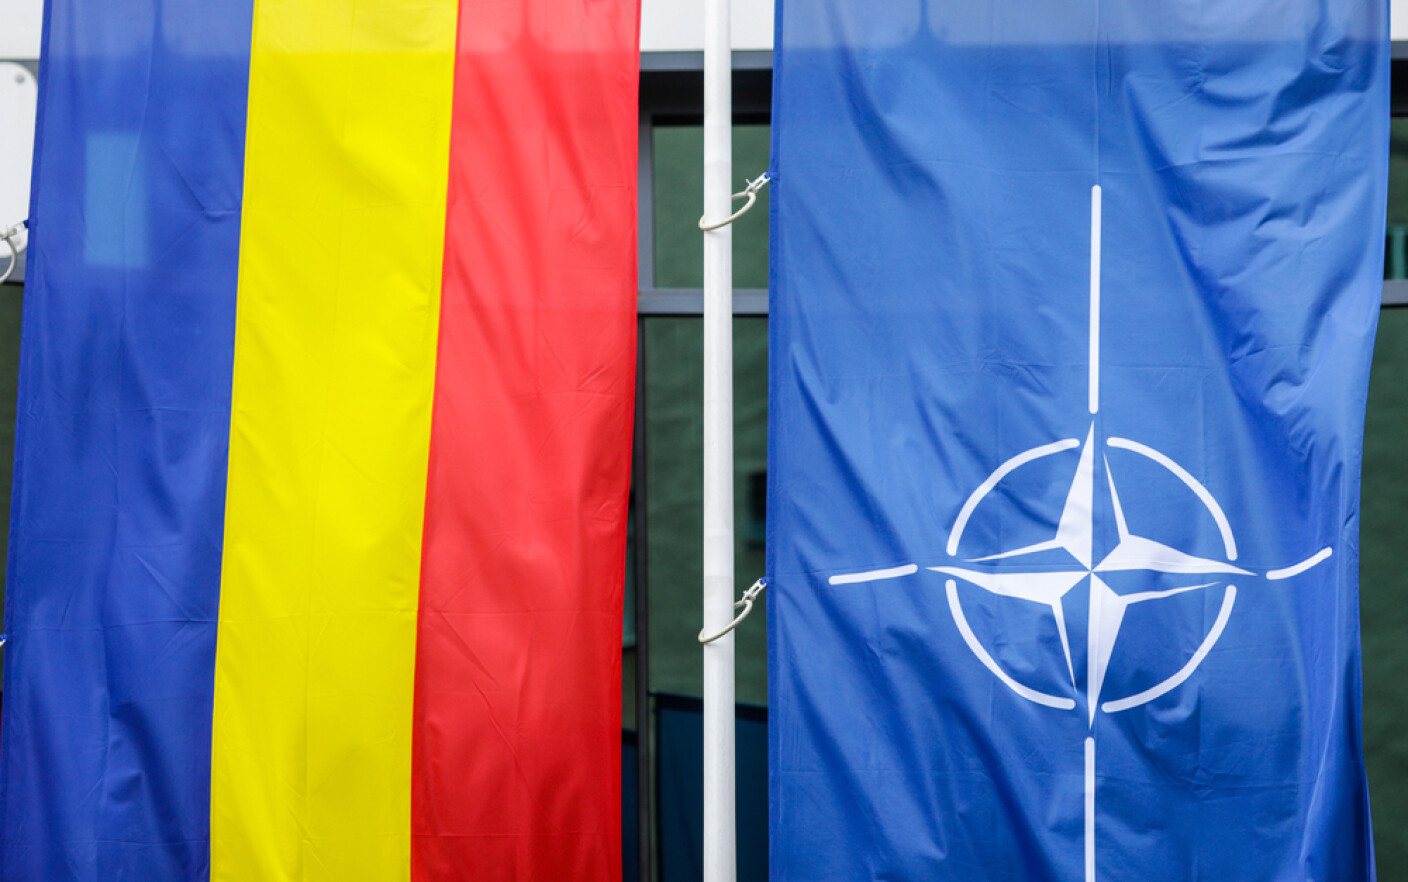 Ο πρώην διοικητής των στρατευμάτων του ΝΑΤΟ στην Ευρώπη επικρίνει τις υποδομές στη Ρουμανία: “Δεν είναι καλό ούτε για τις επιχειρήσεις!”